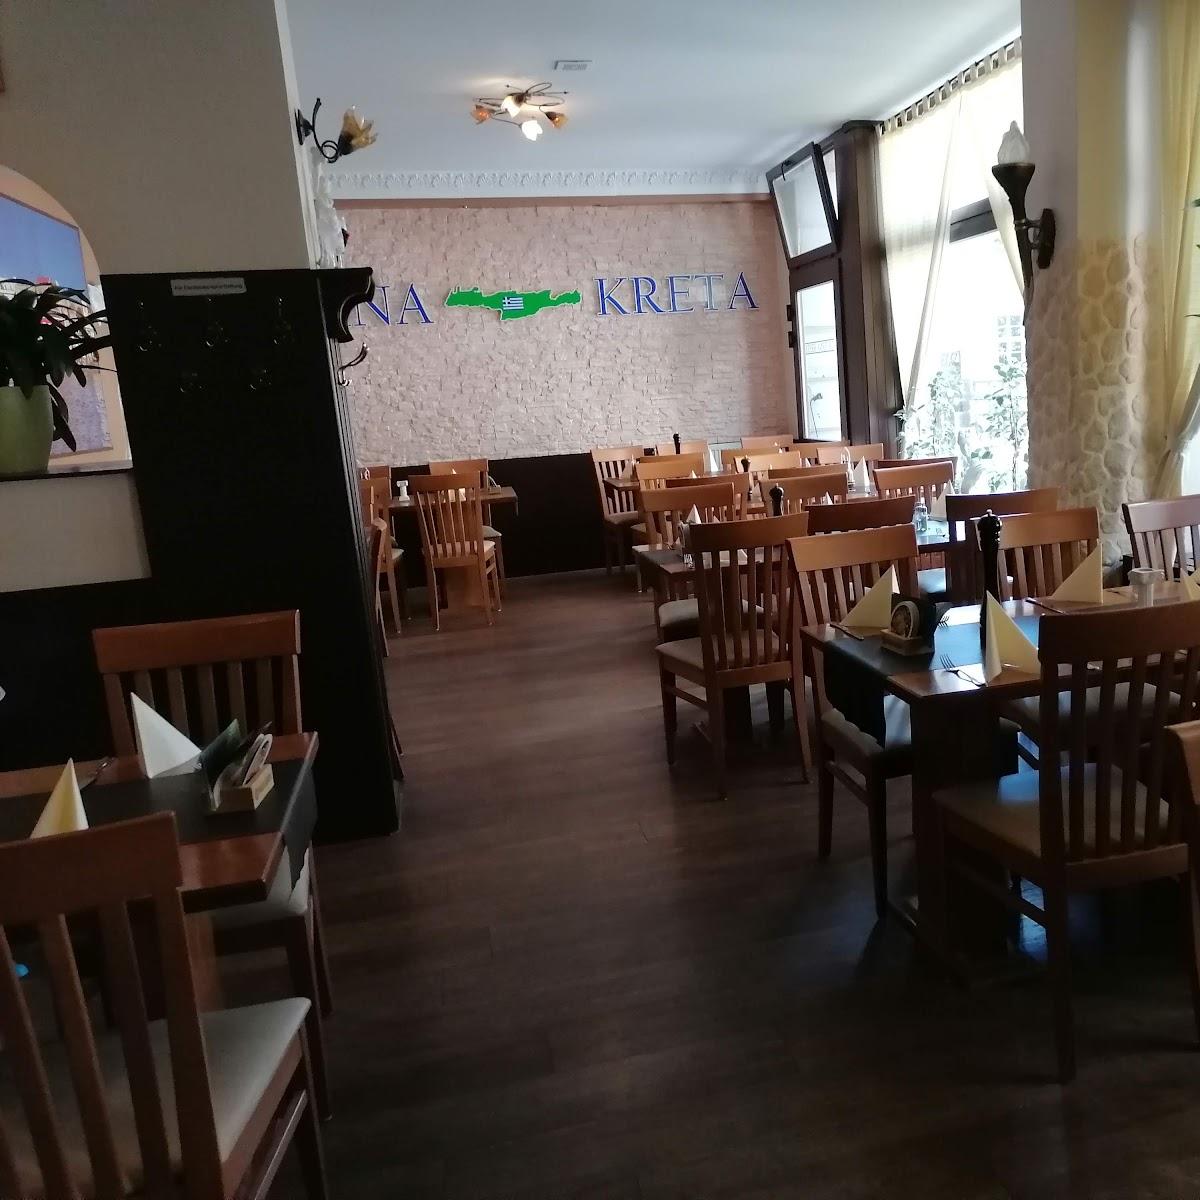 Restaurant "Taverna Kreta Griechisches Restaurant" in Halle (Saale)